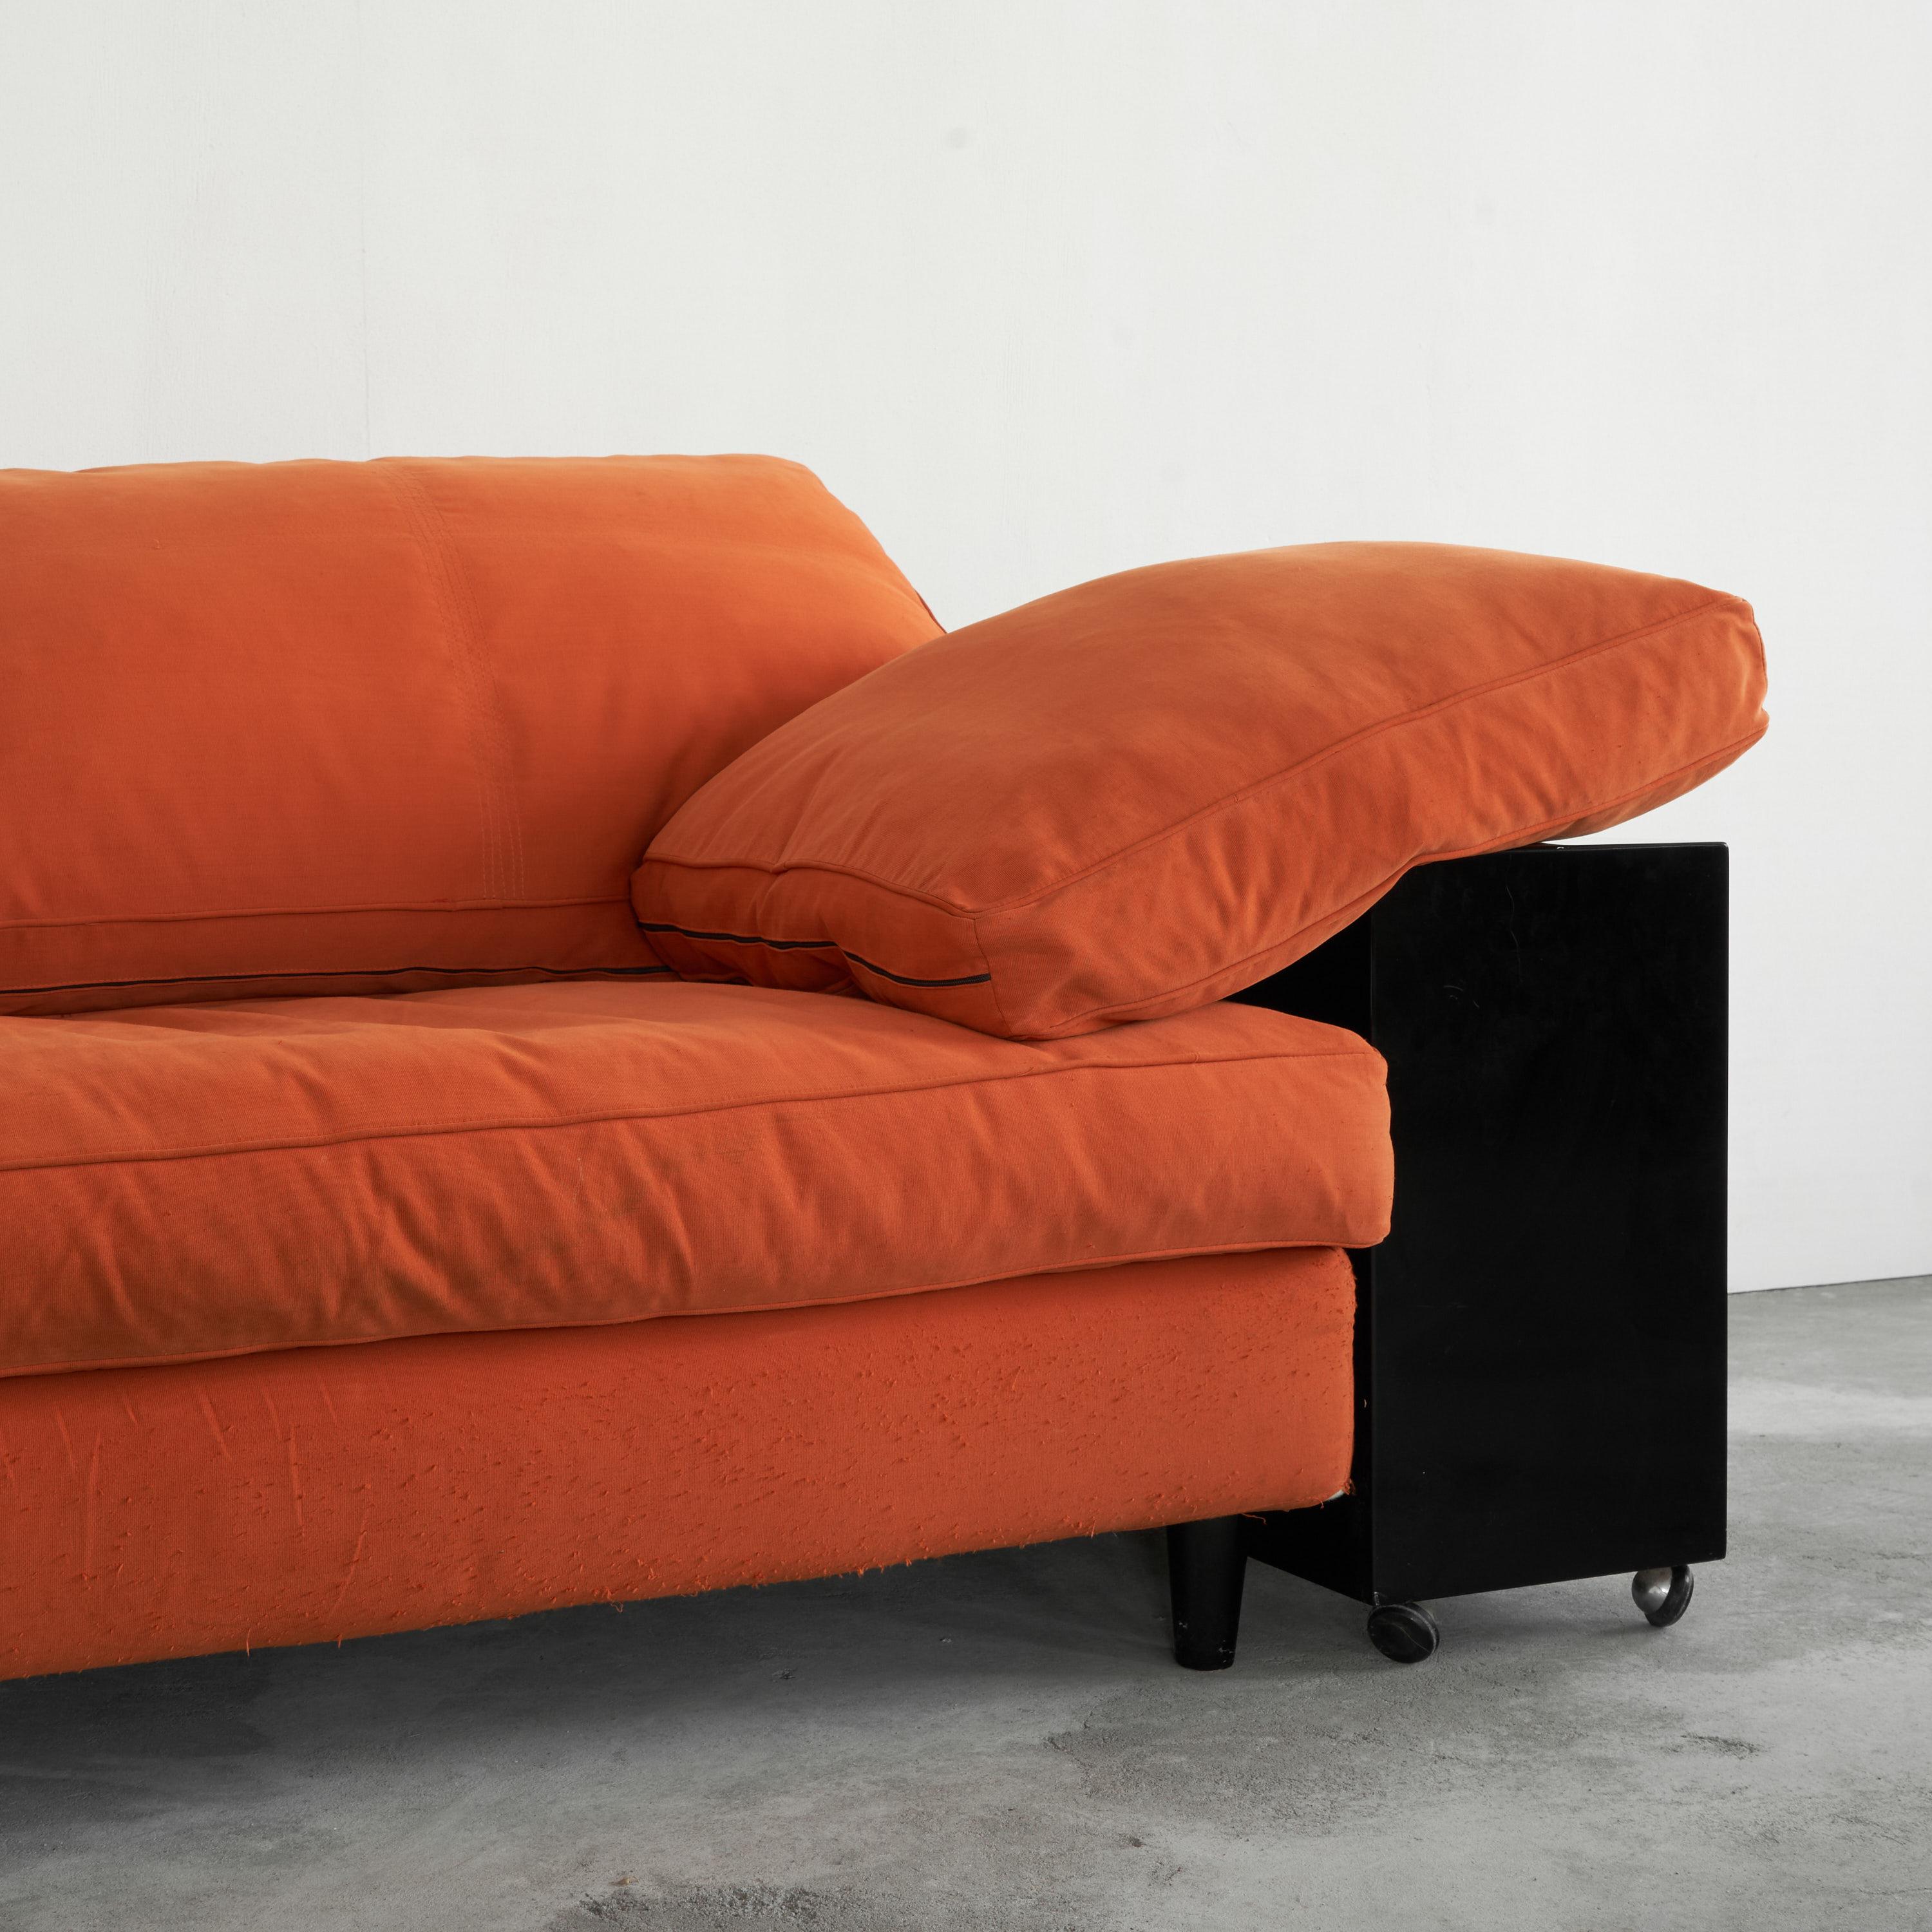 Tissu Eileen Gray 'Lota' Sofa in Black Lacquer and Orange Fabric 1980s en vente